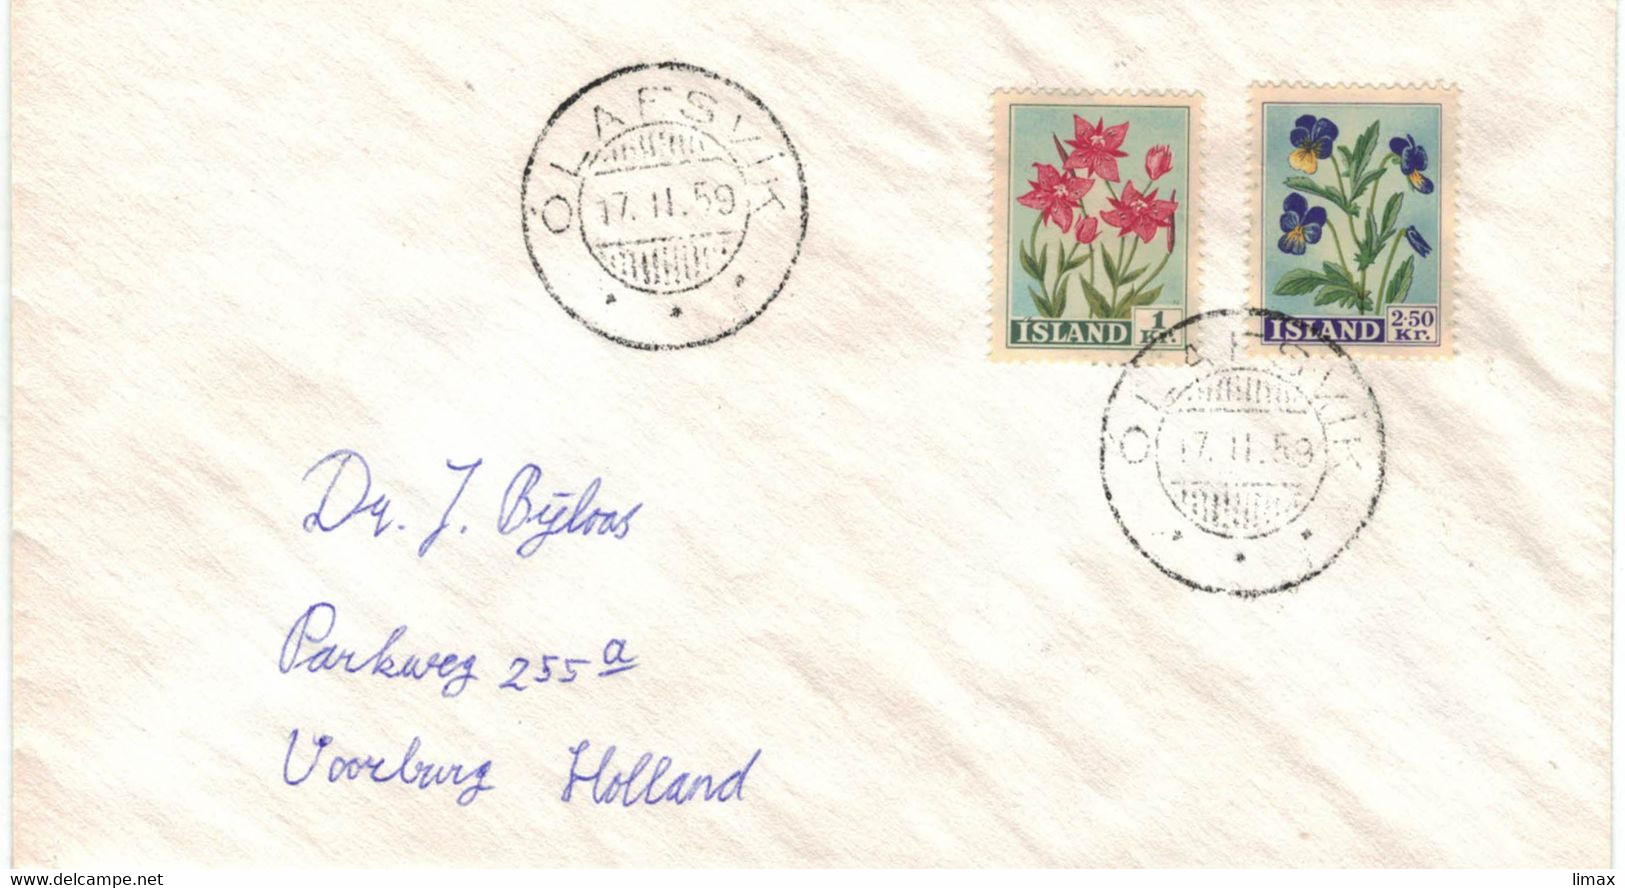 Island Olafsvik Island 1959 - Epilobium Weidenröschen Willow Herb - Stiefmütterchen - Blumen - Lettres & Documents